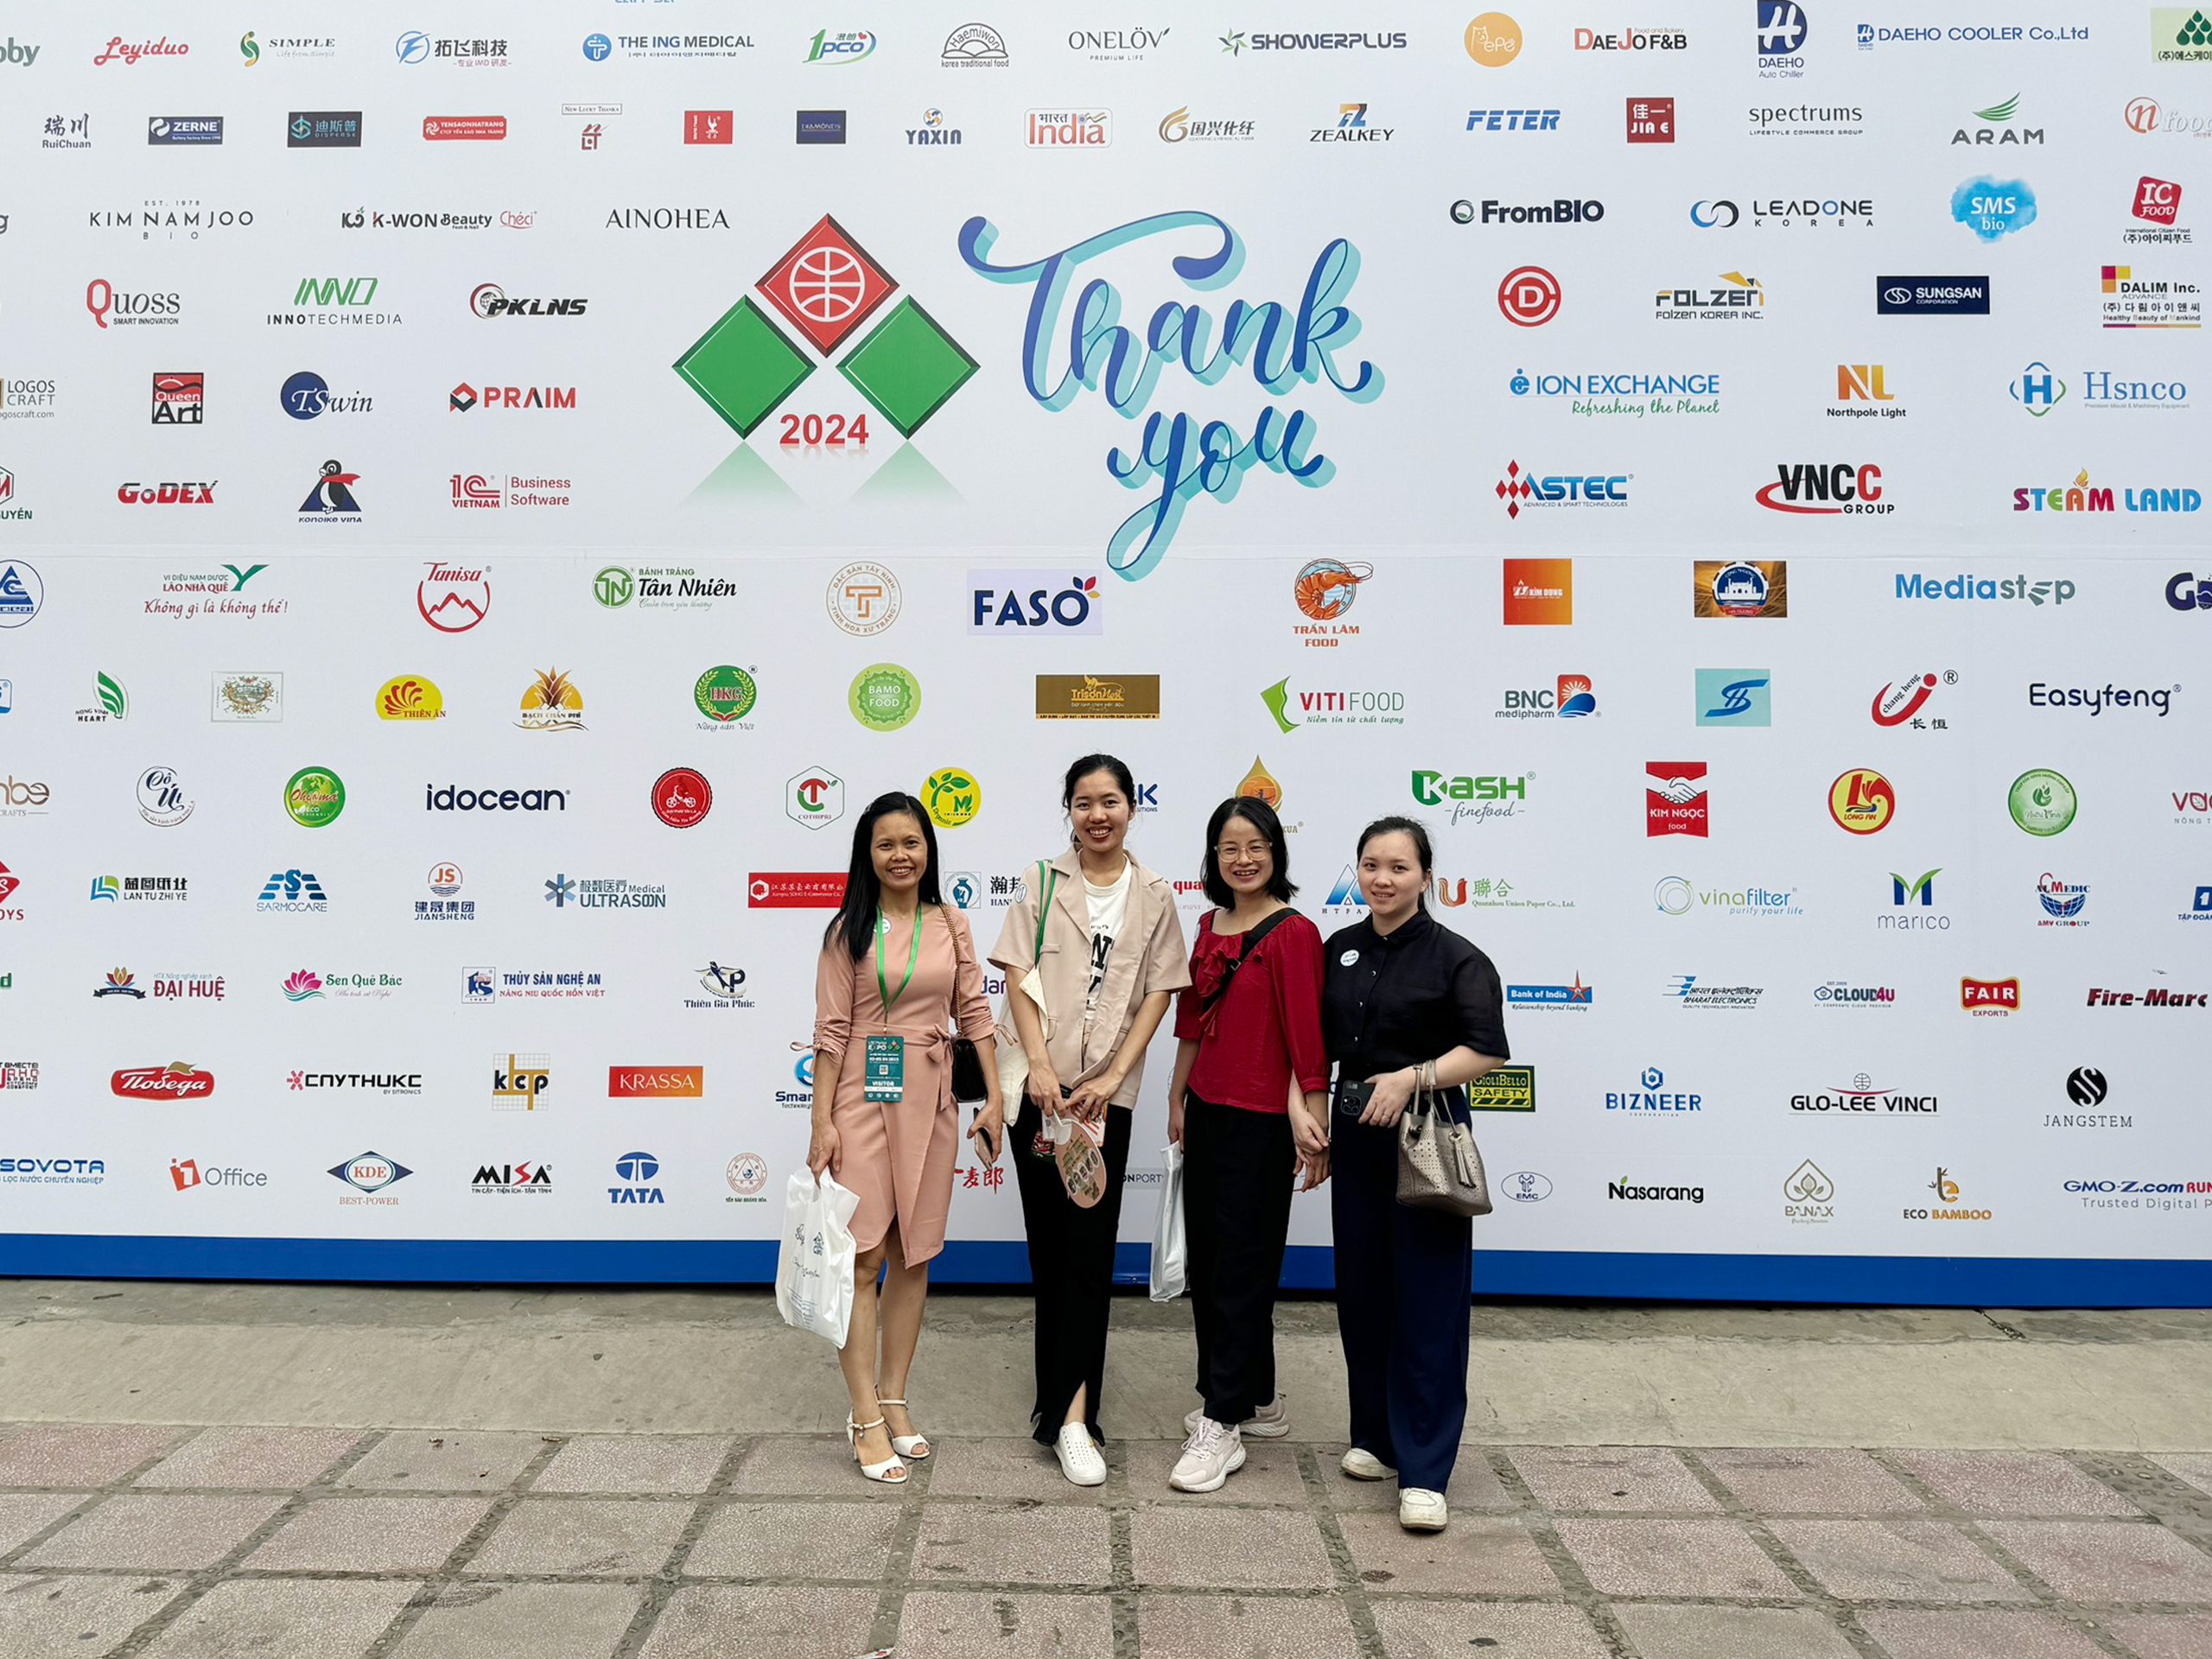 Thiên Nguyên tham dự hội chợ Vietnam Expo 2024